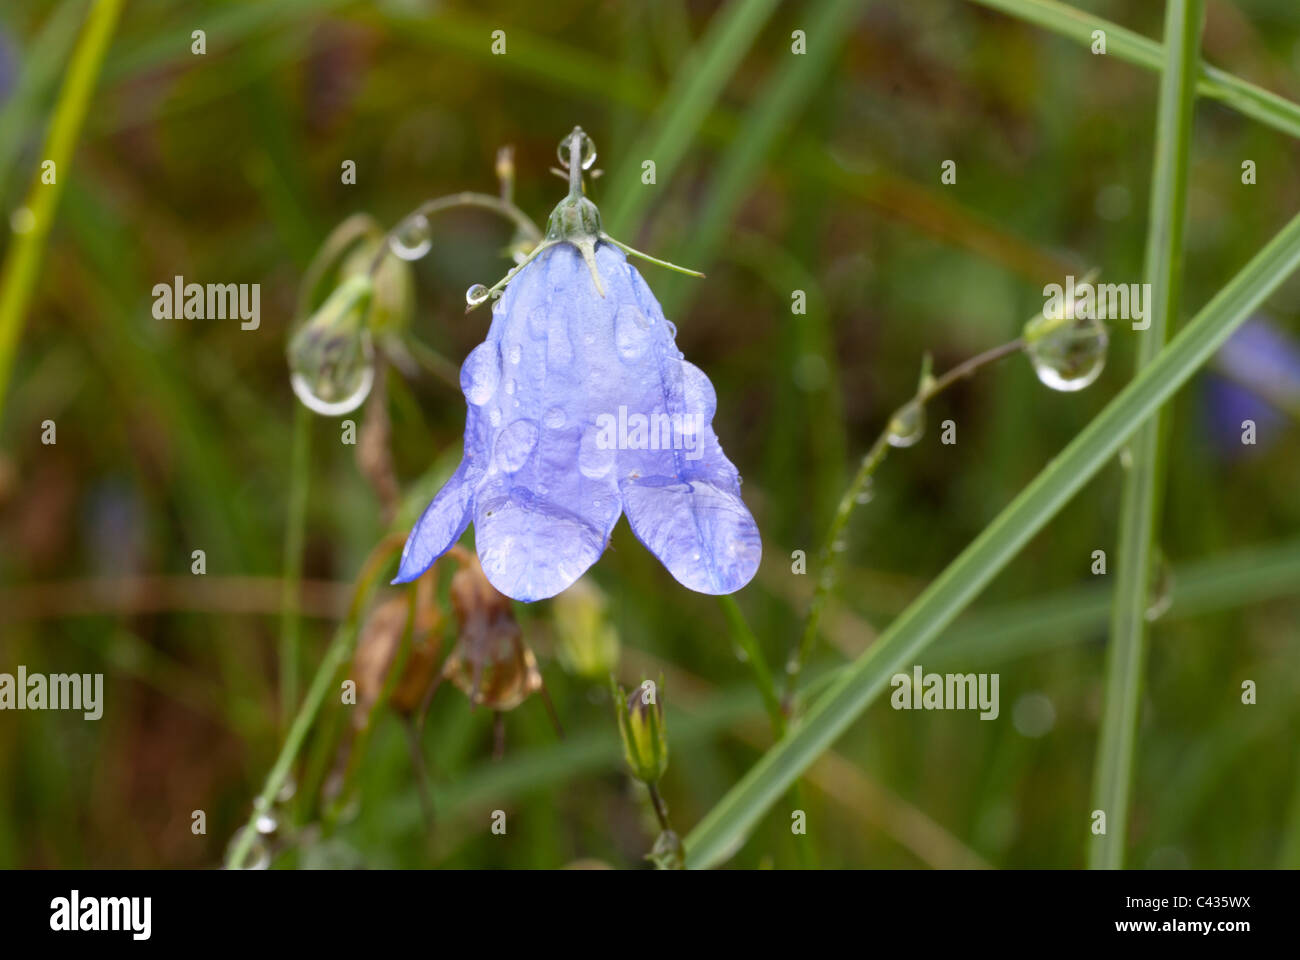 Plant, Harebell, Campanula rotundifolia, Raindrops, Stock Photo